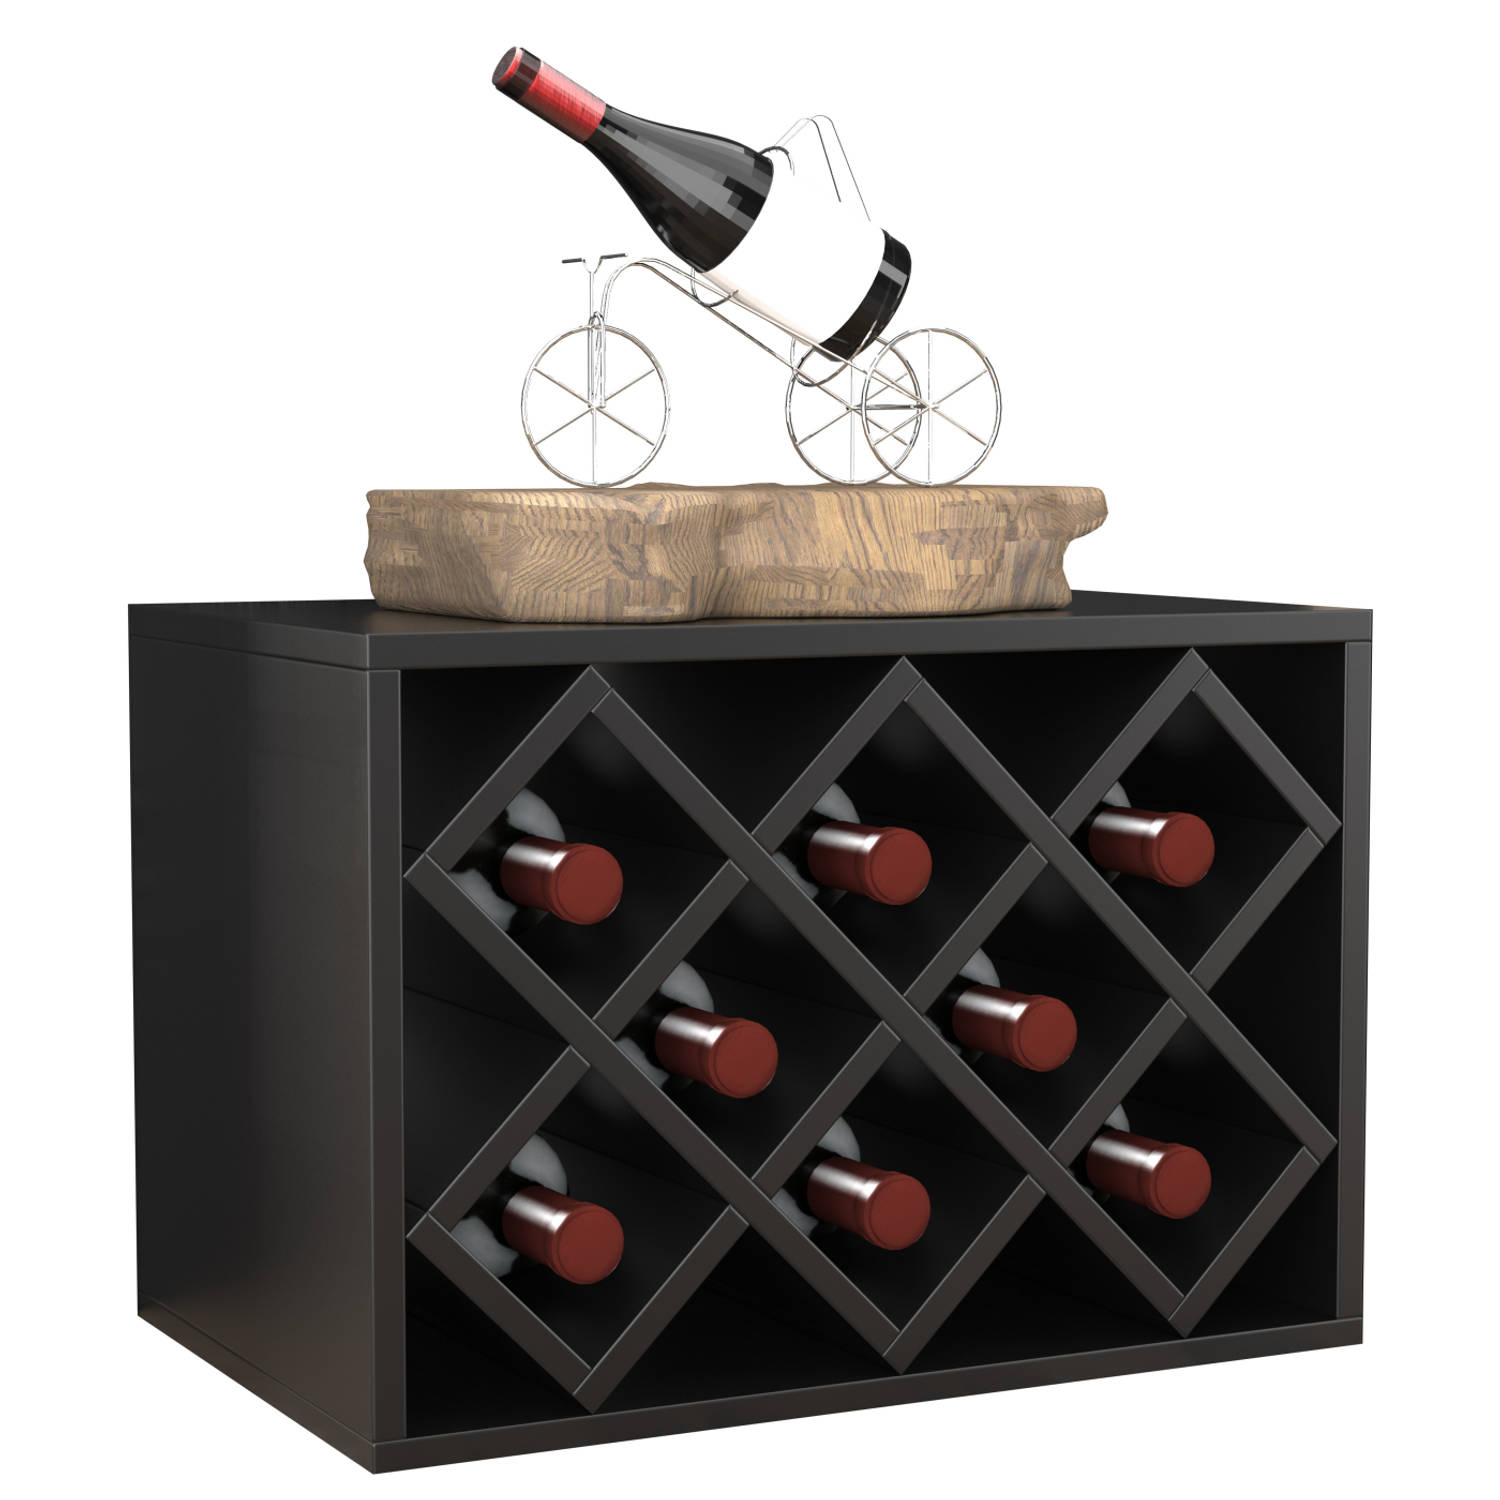 Wijnrek stapelbaar meerdere stuks langs of op elkaar 8 flessen liggend of staand te gebruiken